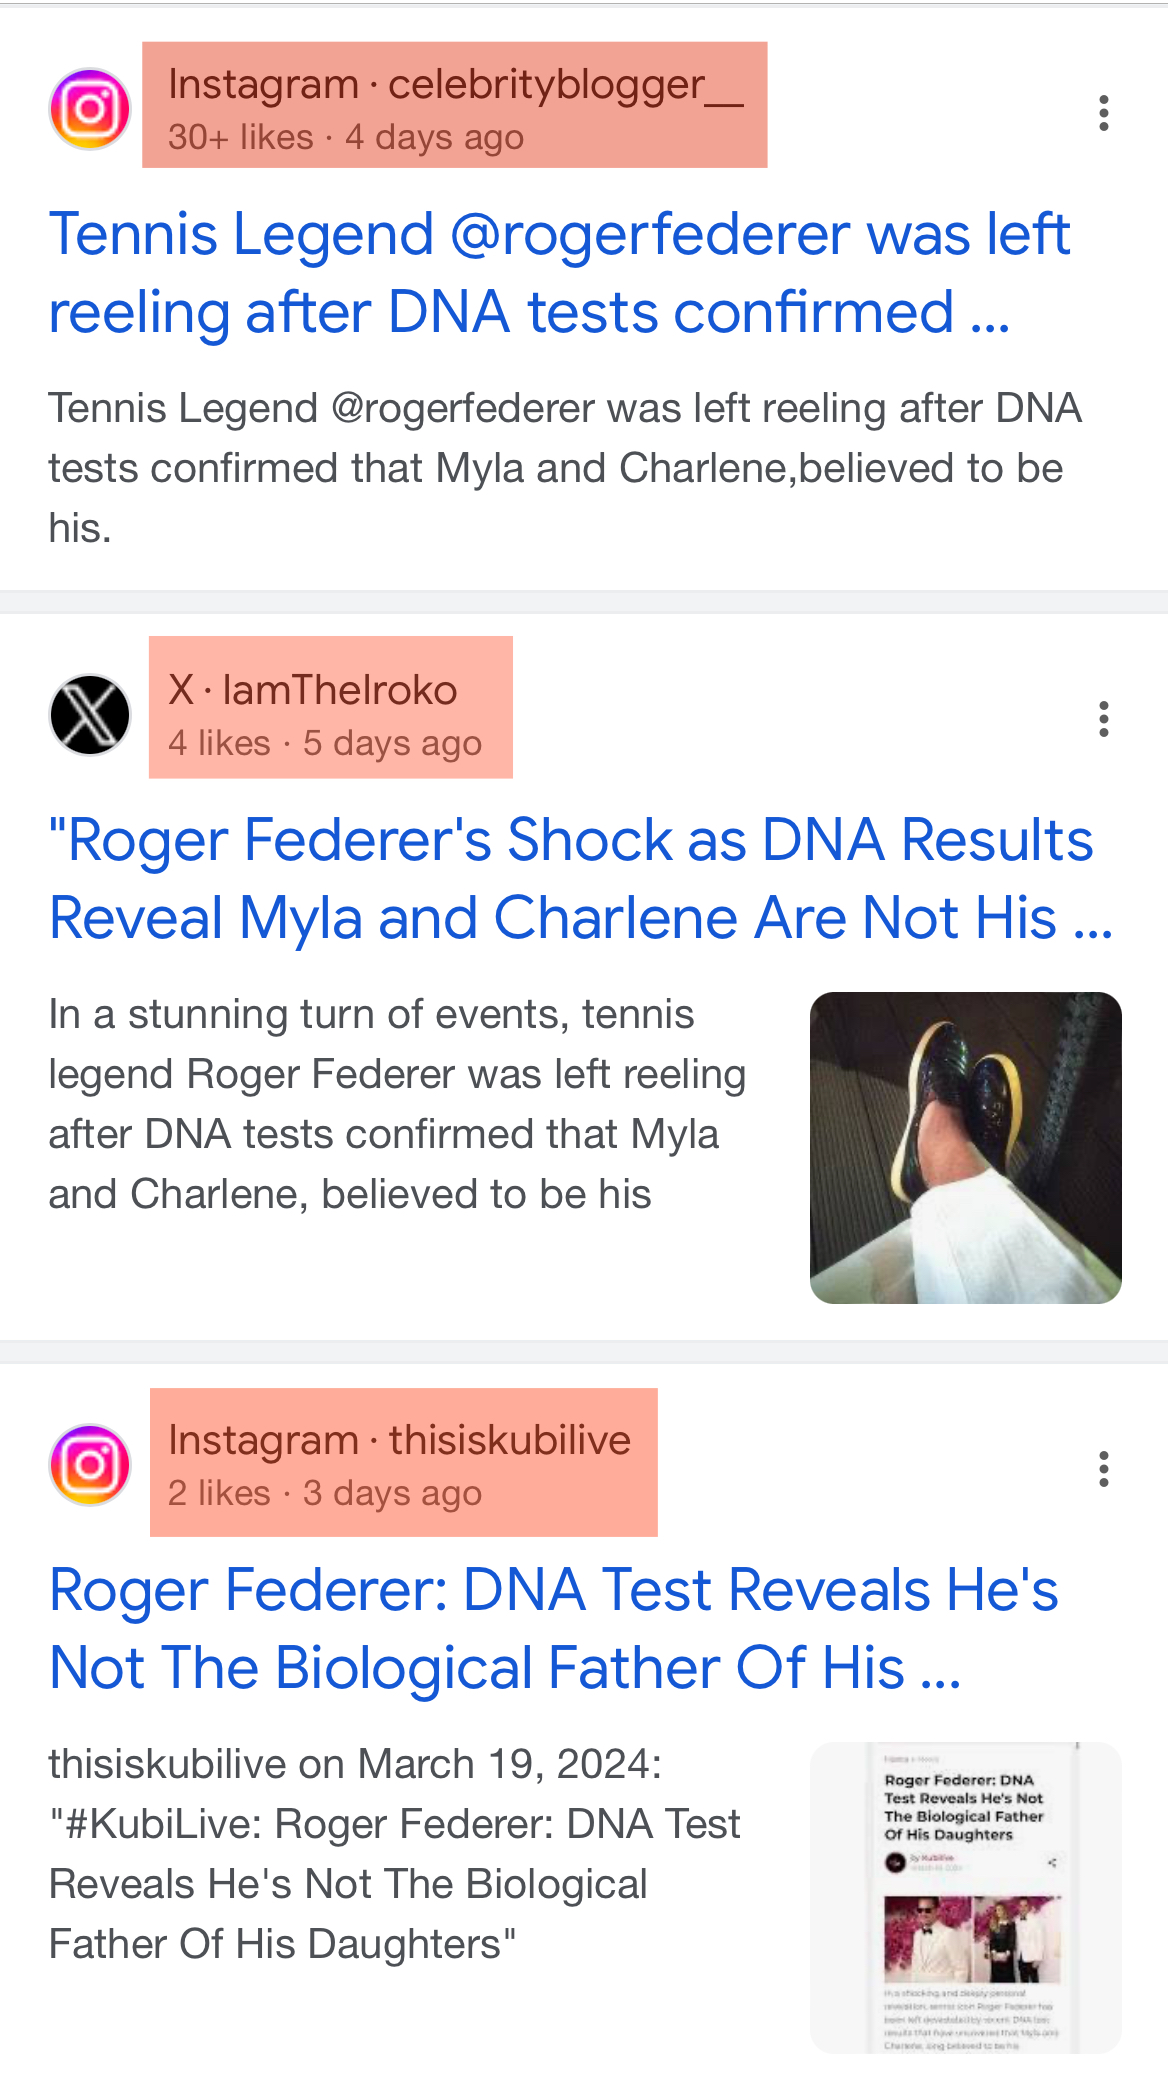 سرچ گوگل درباره راجر فدرر